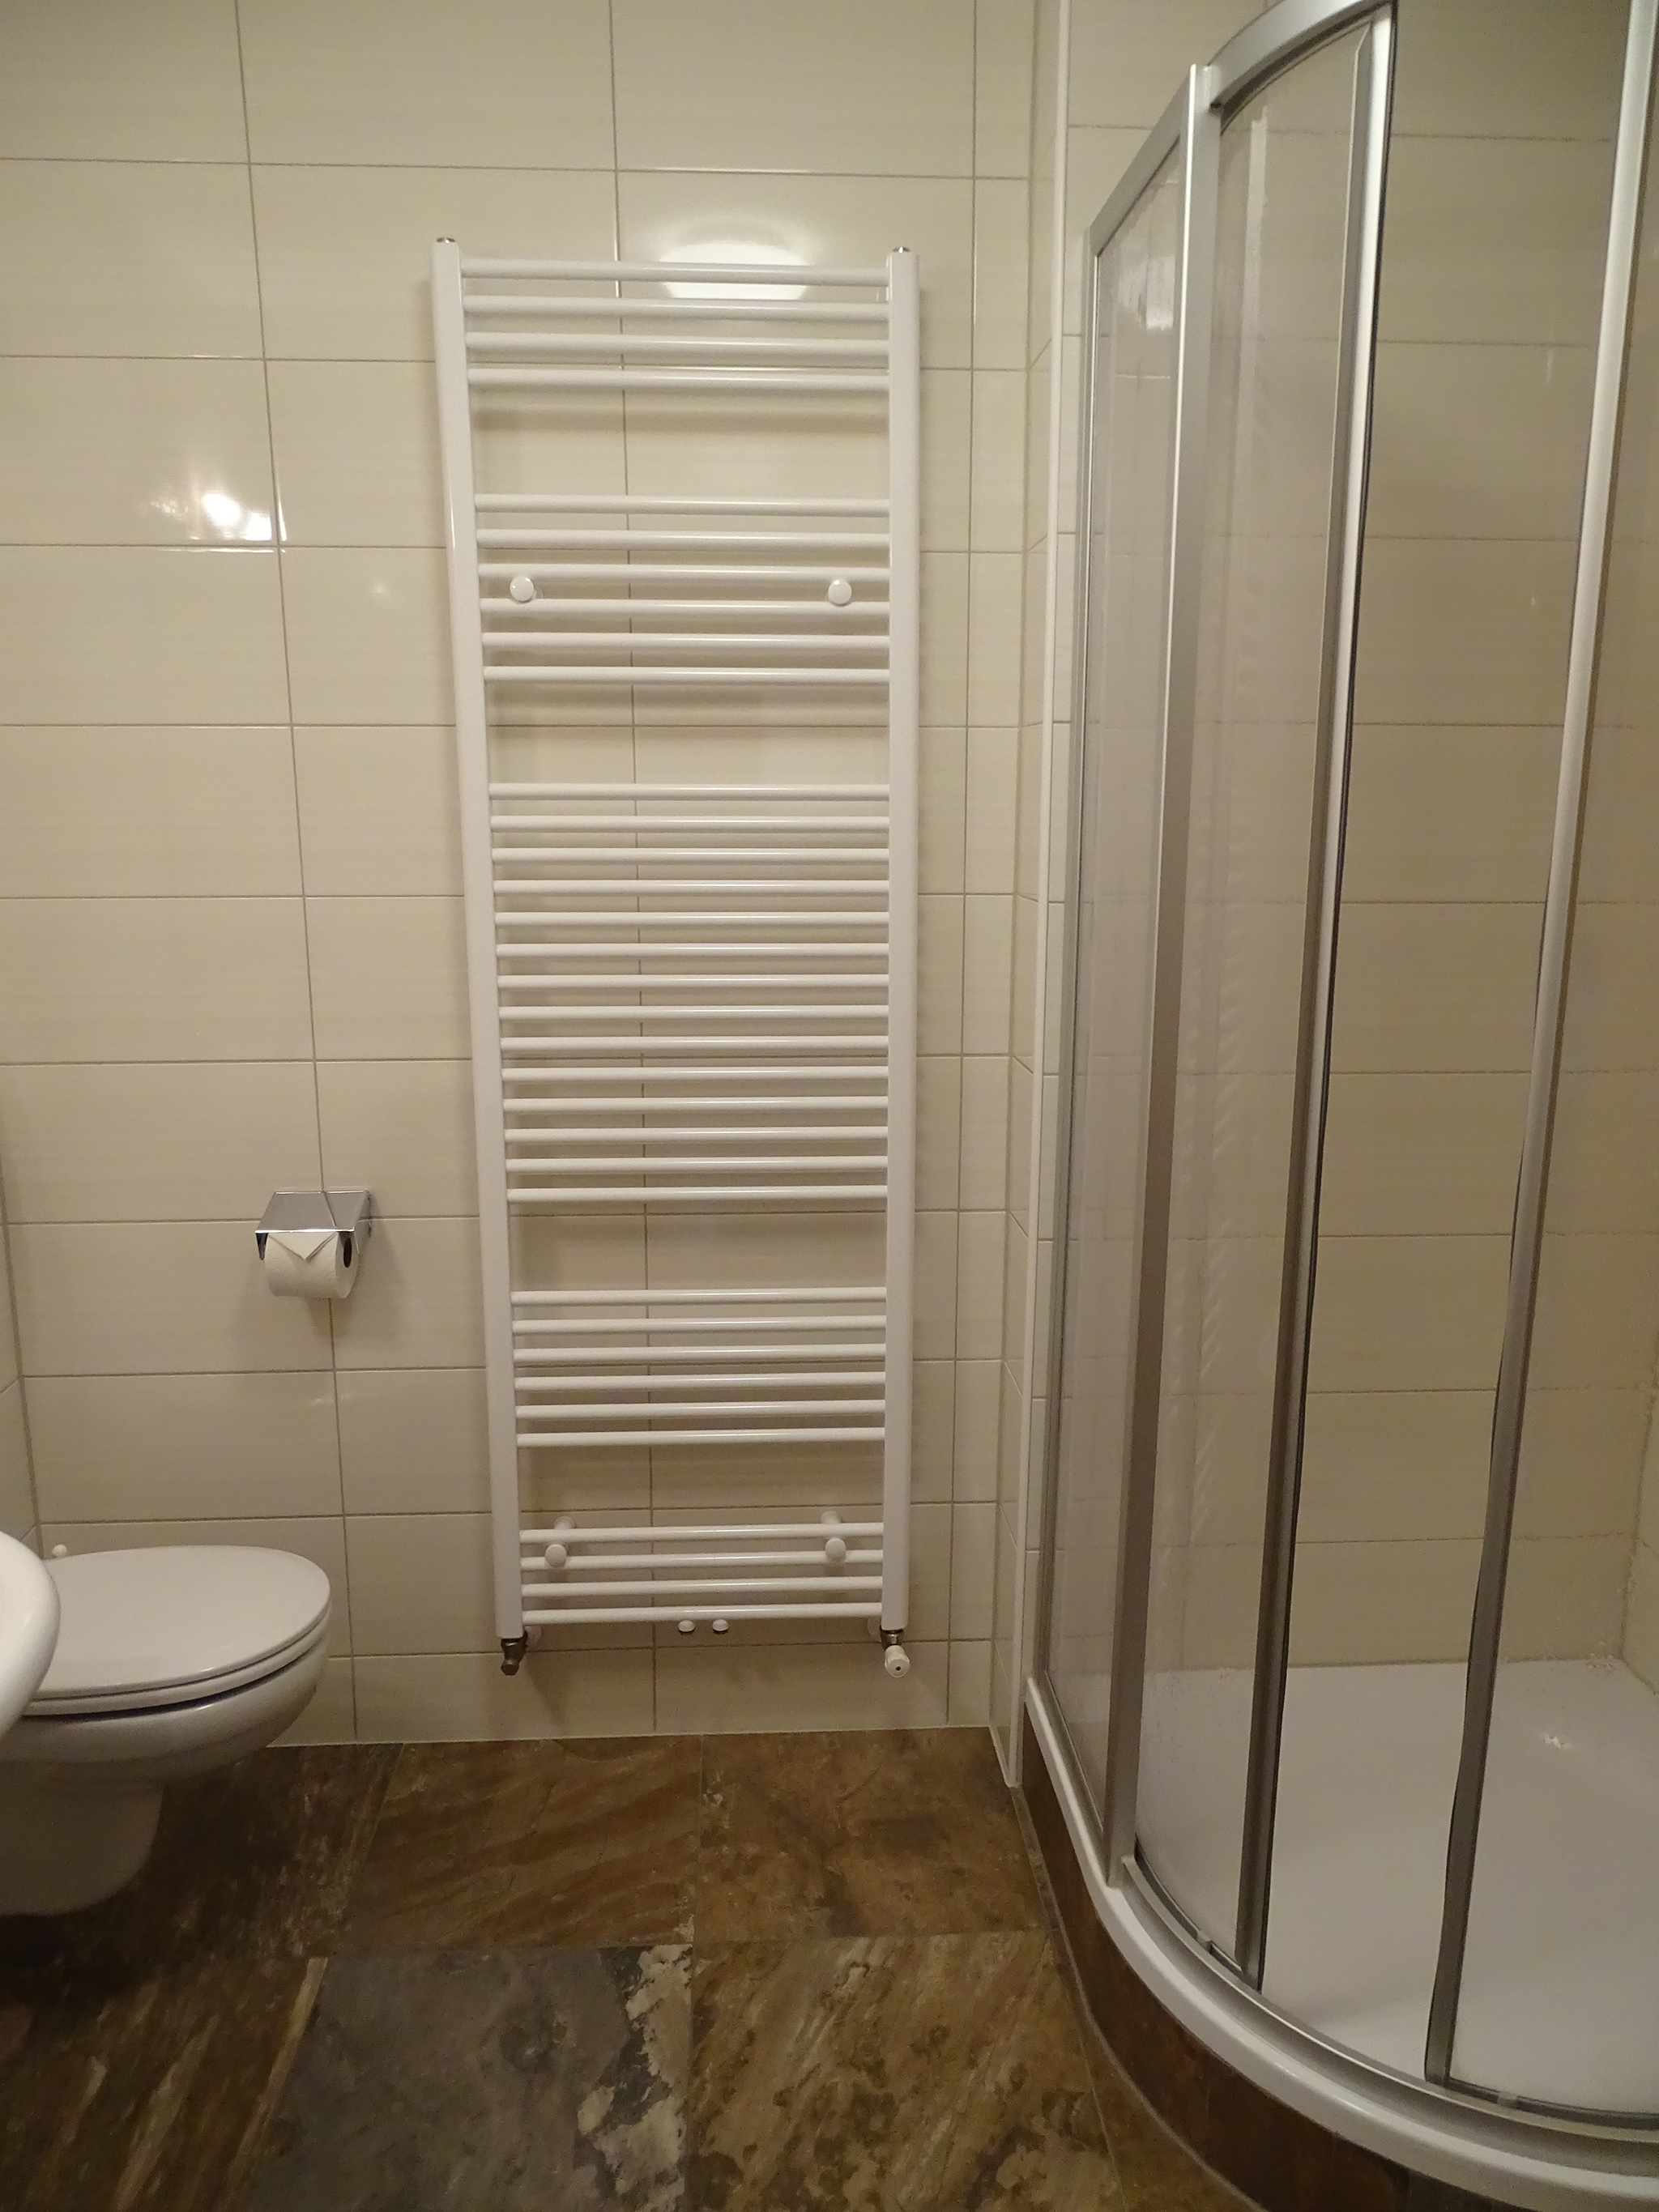 Appartements Windschnur: Badezimmer (Beispiel)